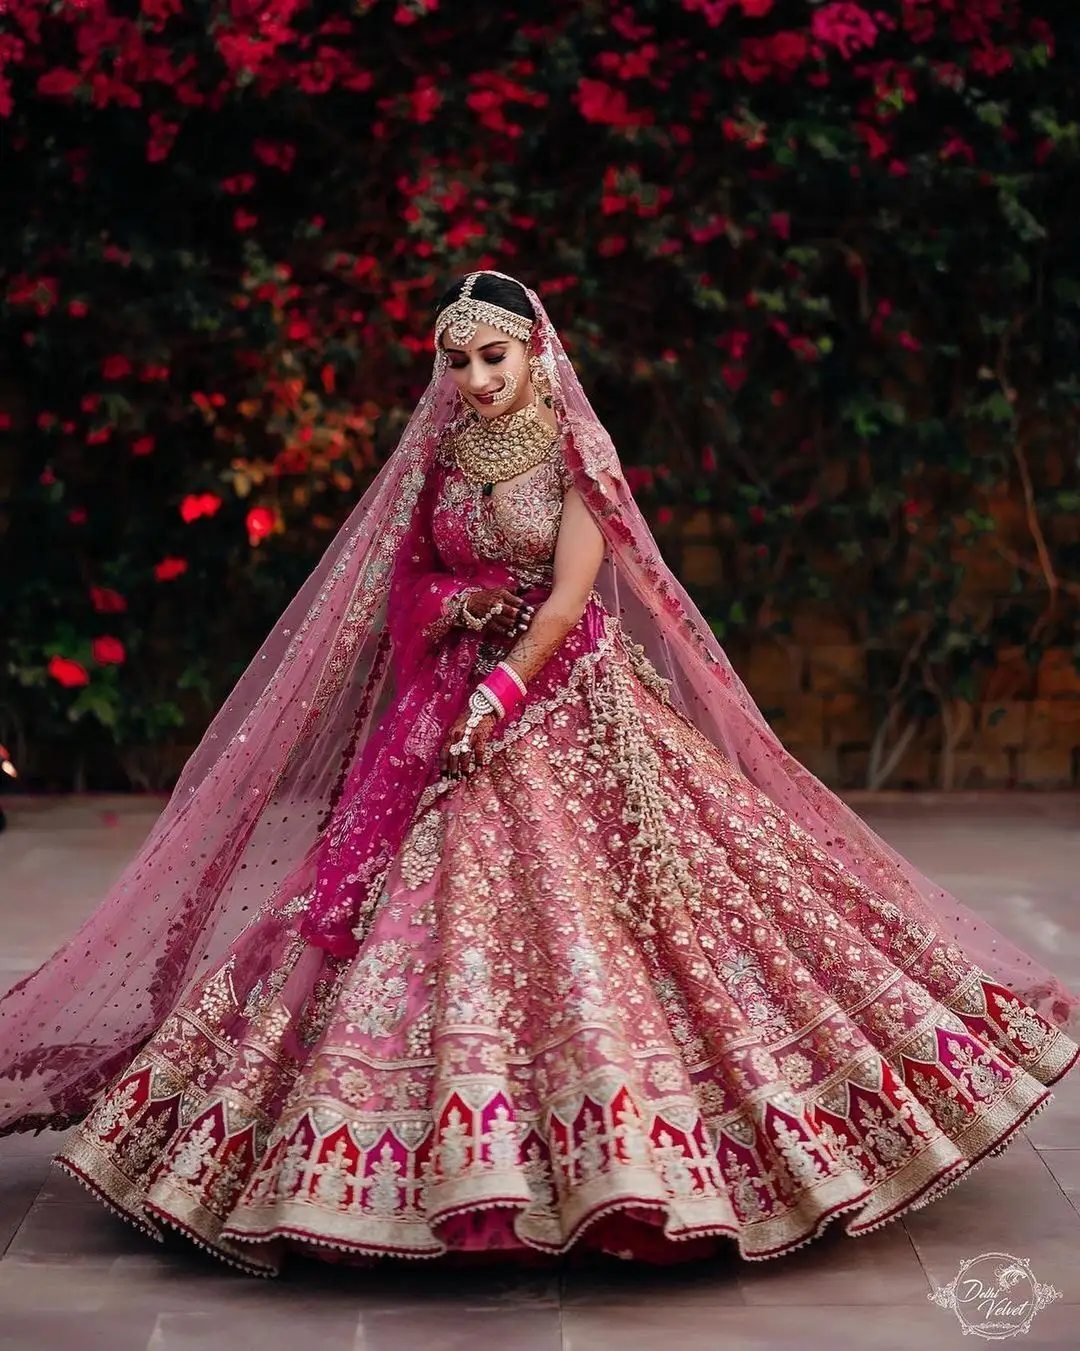 डिजाइनर मखमल lehenga महिलाओं शादी और विशेष अवसर के लिए ऑनलाइन शॉपिंग शादी की पोशाक सूरत, भारत